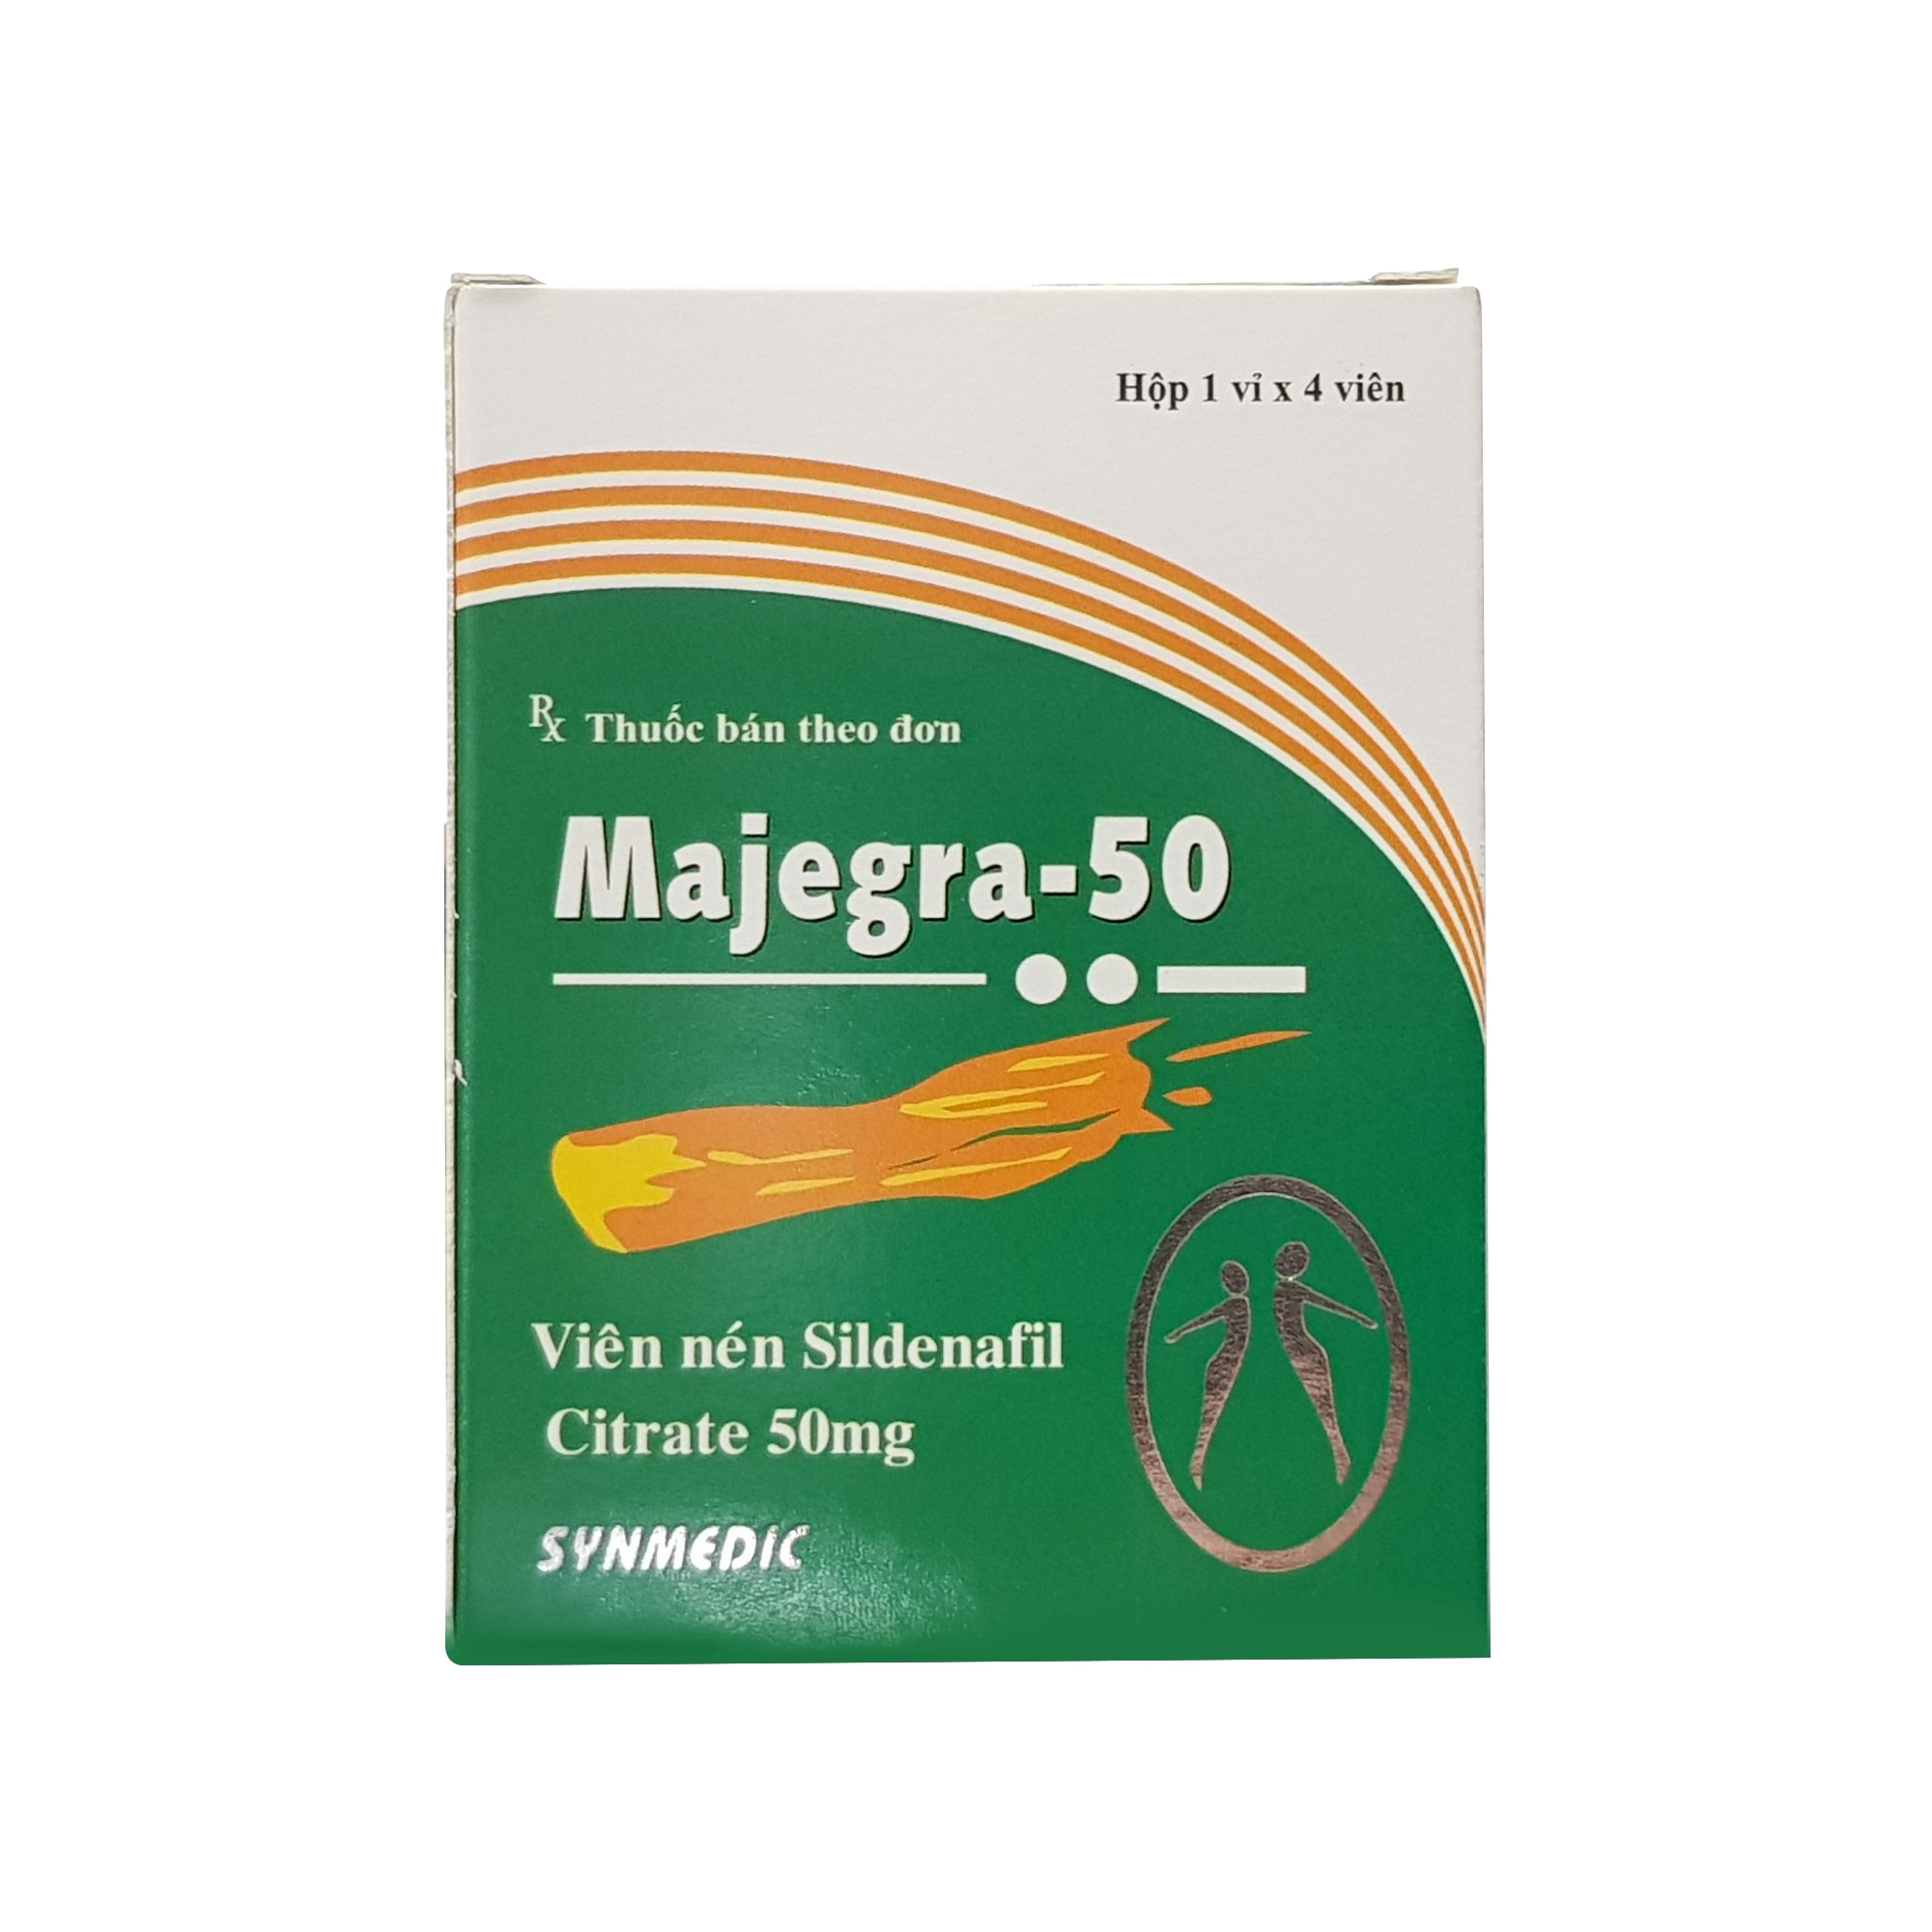 Thảo dược cương dương Majegra 50mg, Hộp 4 viên